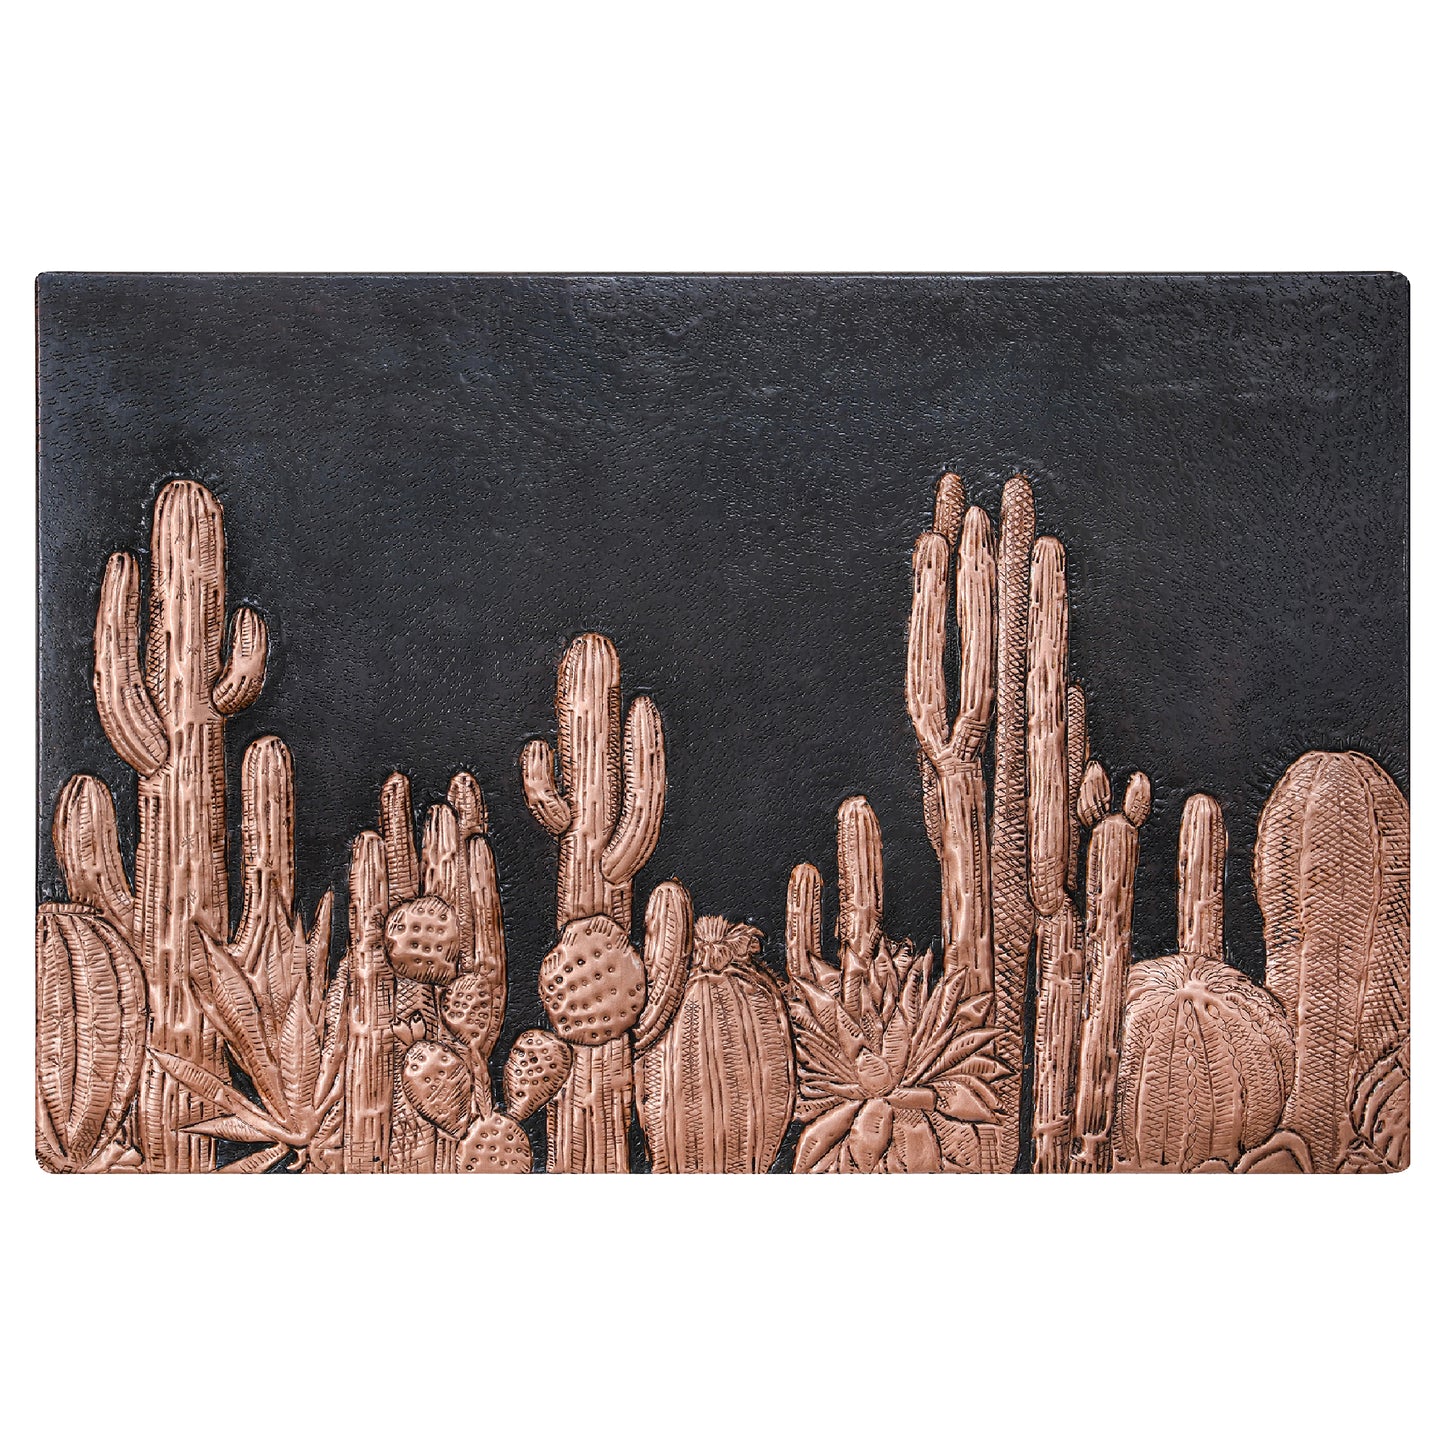 American Backsplash Tile Cactuses